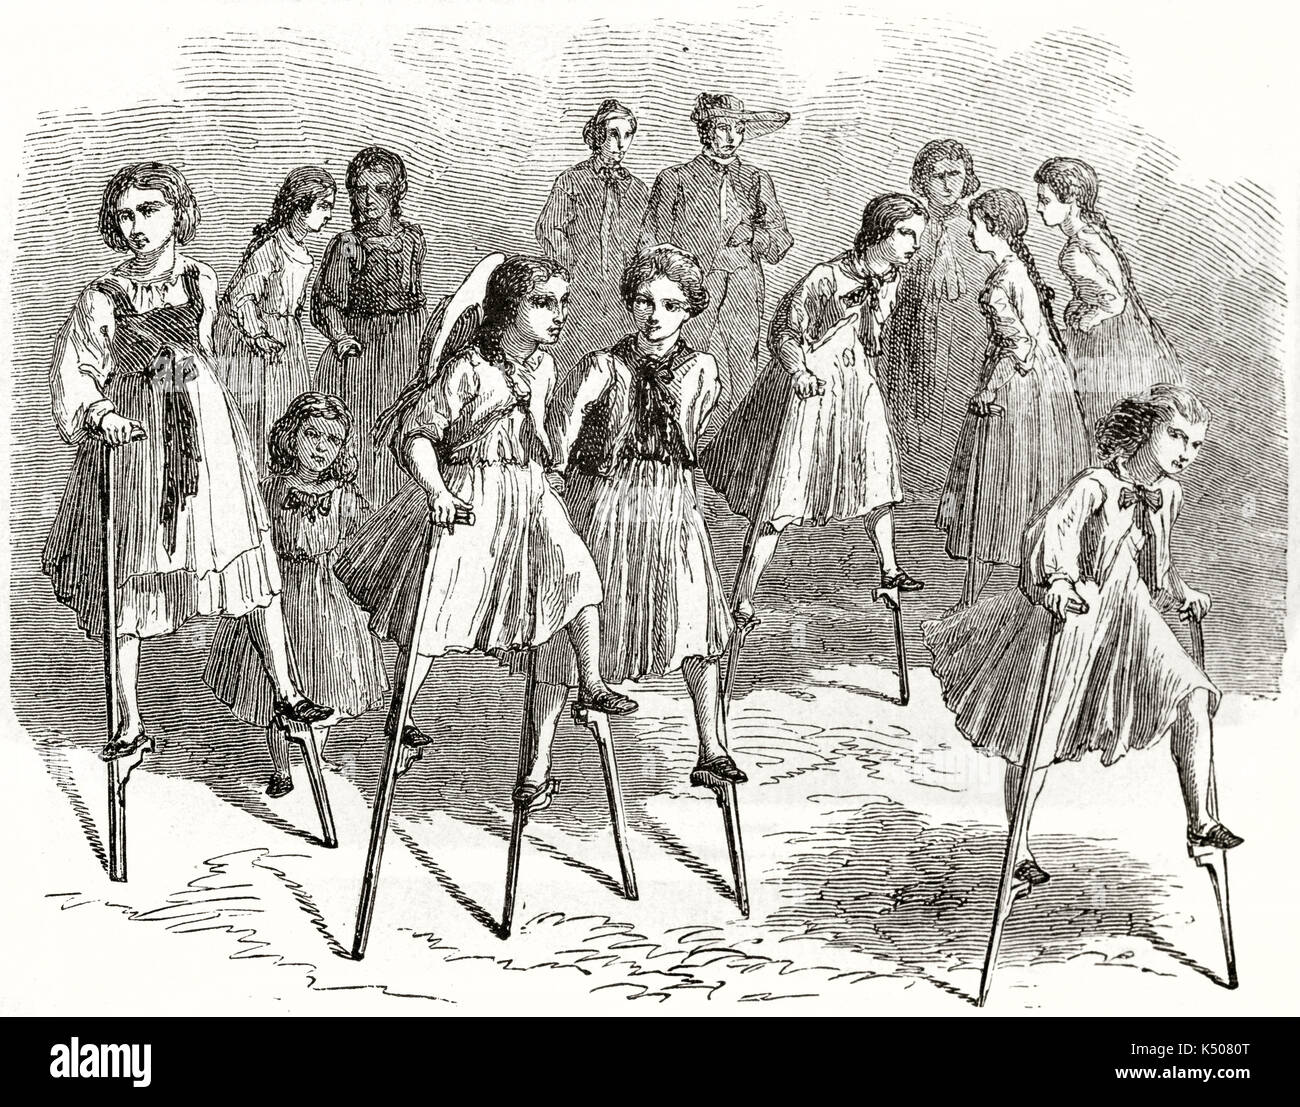 Vecchia illustrazione di ragazze giocando su palafitte. Creato da Lancelot pubblicato in Le Tour du Monde Parigi 1862 Foto Stock